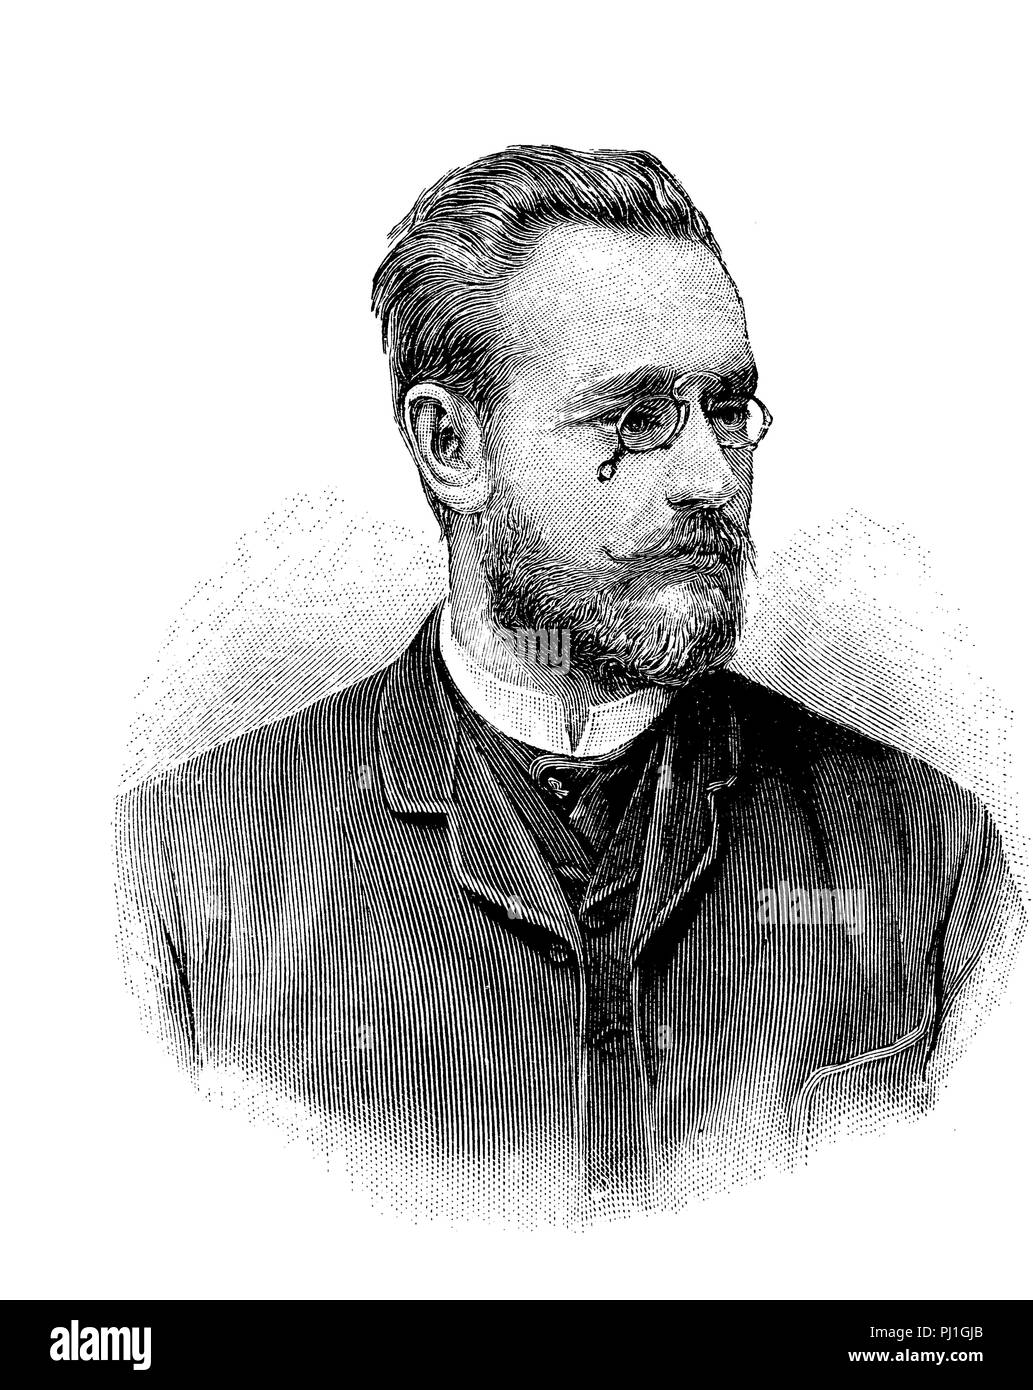 Carl Auer von Welsbach, noto anche come Carl Auer Freiherr von Welsbach (1 settembre 1858 - 4 agosto 1929), scienziato austriaco ed inventore, digitale Riproduzione migliorata di un woodprint dall'anno 1890 Foto Stock